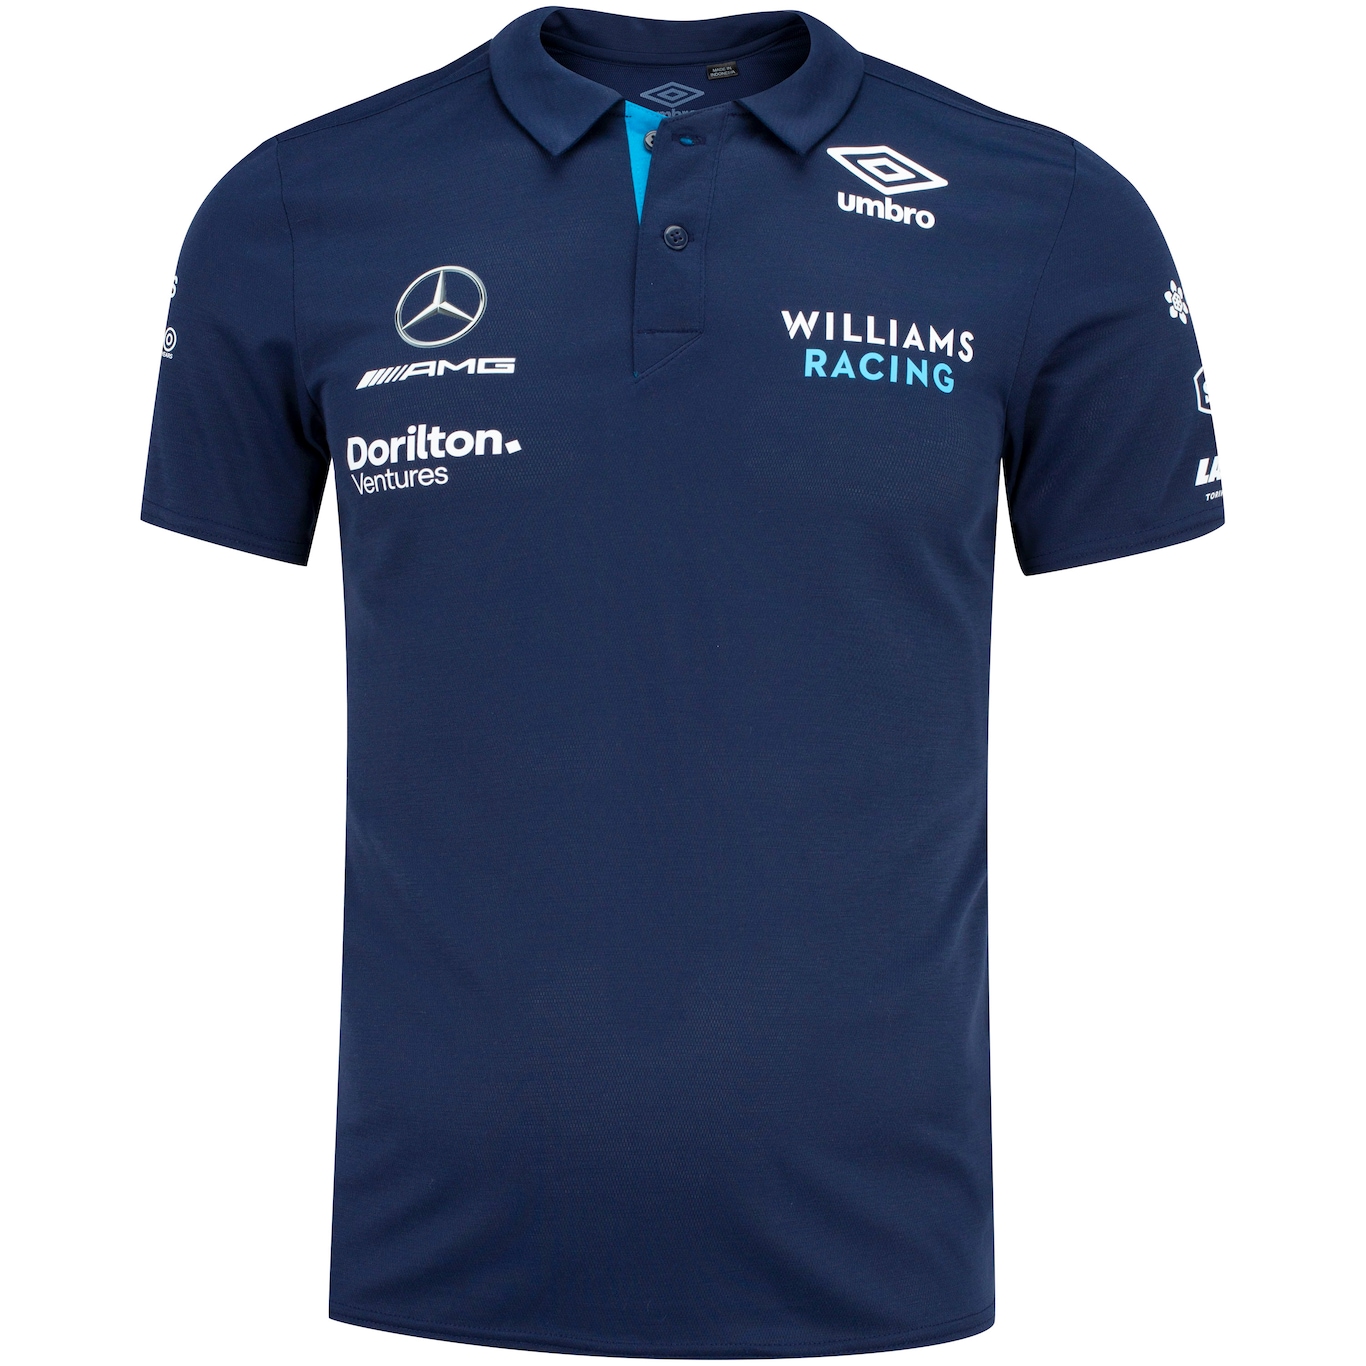 Camisa Polo Umbro Williams Racing - Masculina - Foto 5